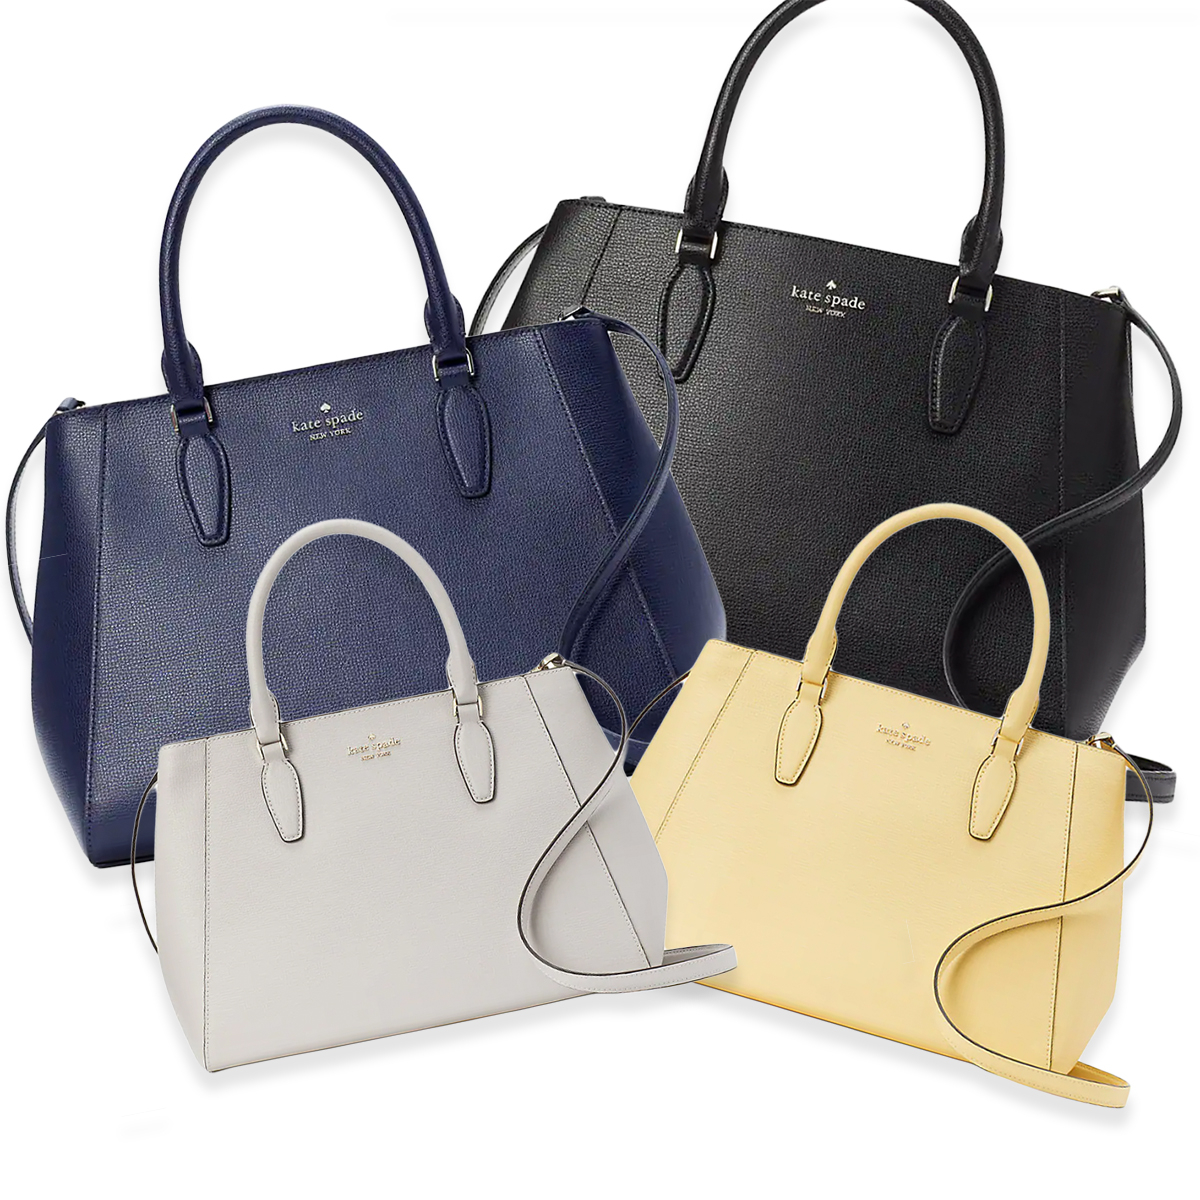 Kate Spade Flash Deal: Get This $400 Shoulder Bag for Just $89